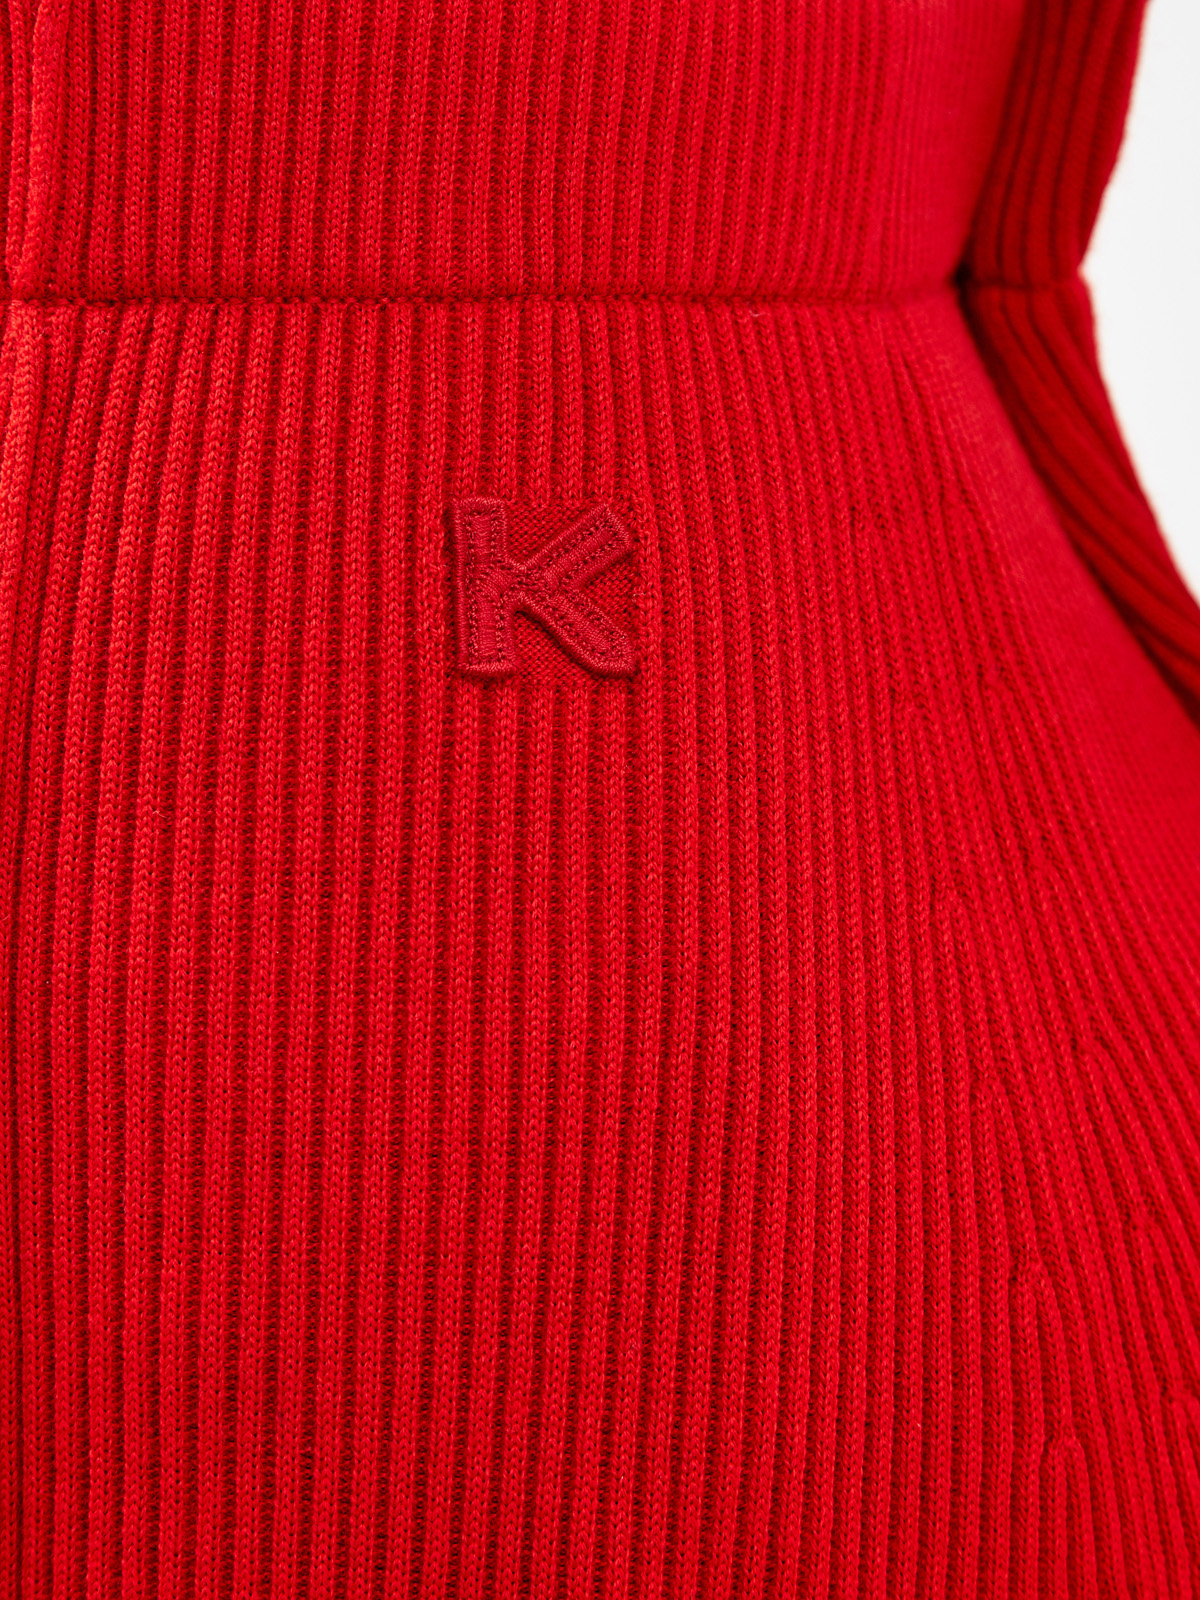 Яркая юбка-миди из пряжи в тонкий рубчик KENZO, цвет красный, размер S;M - фото 5